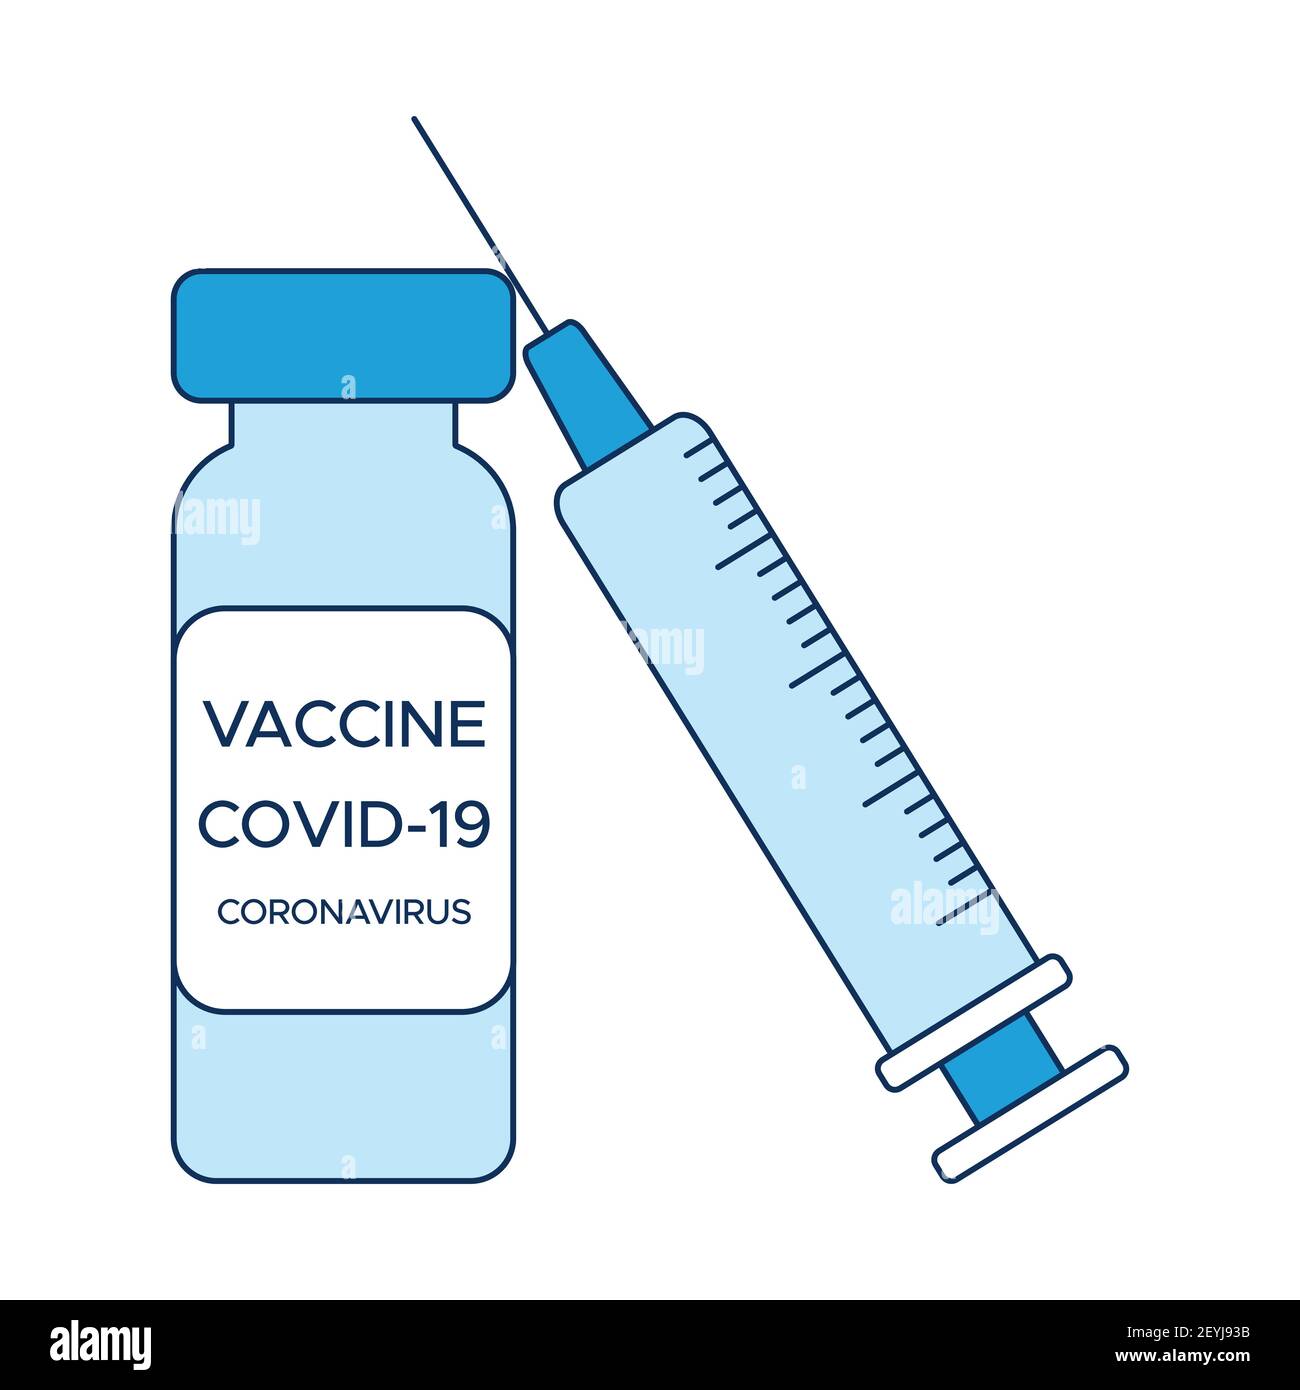 Konzept COVID-19 Impfung, eine Ampulle Impfstoff und eine Spritze, ein medizinisches Poster in Blautönen. Vektor-Illustration im Stil eines flachen ico Stock Vektor